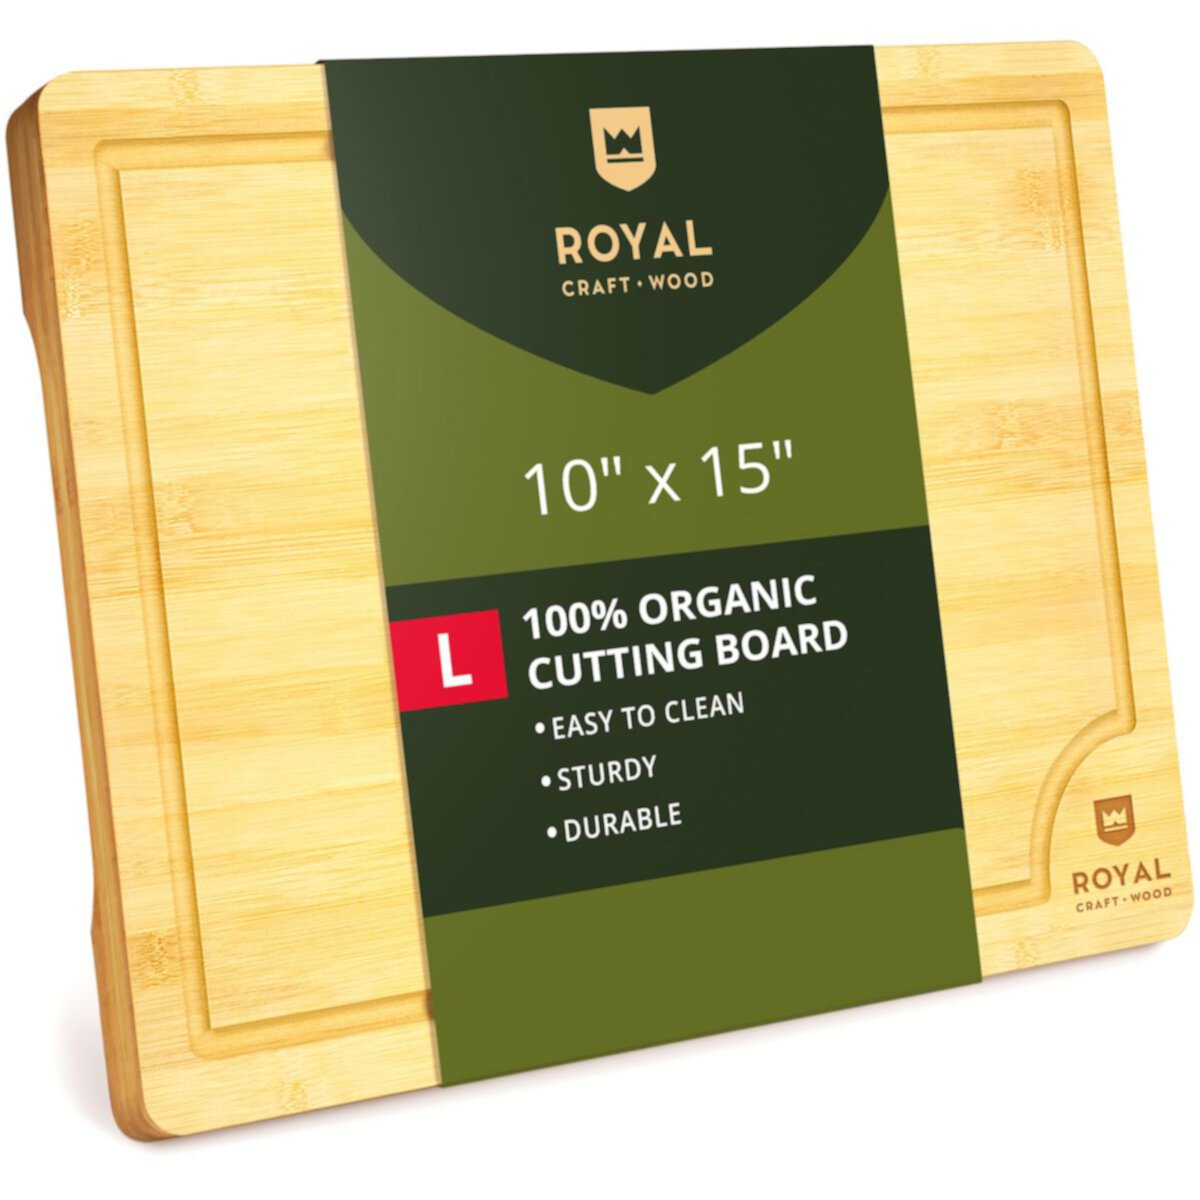 Cutting Board L, 15”x10” Royal Craft Wood